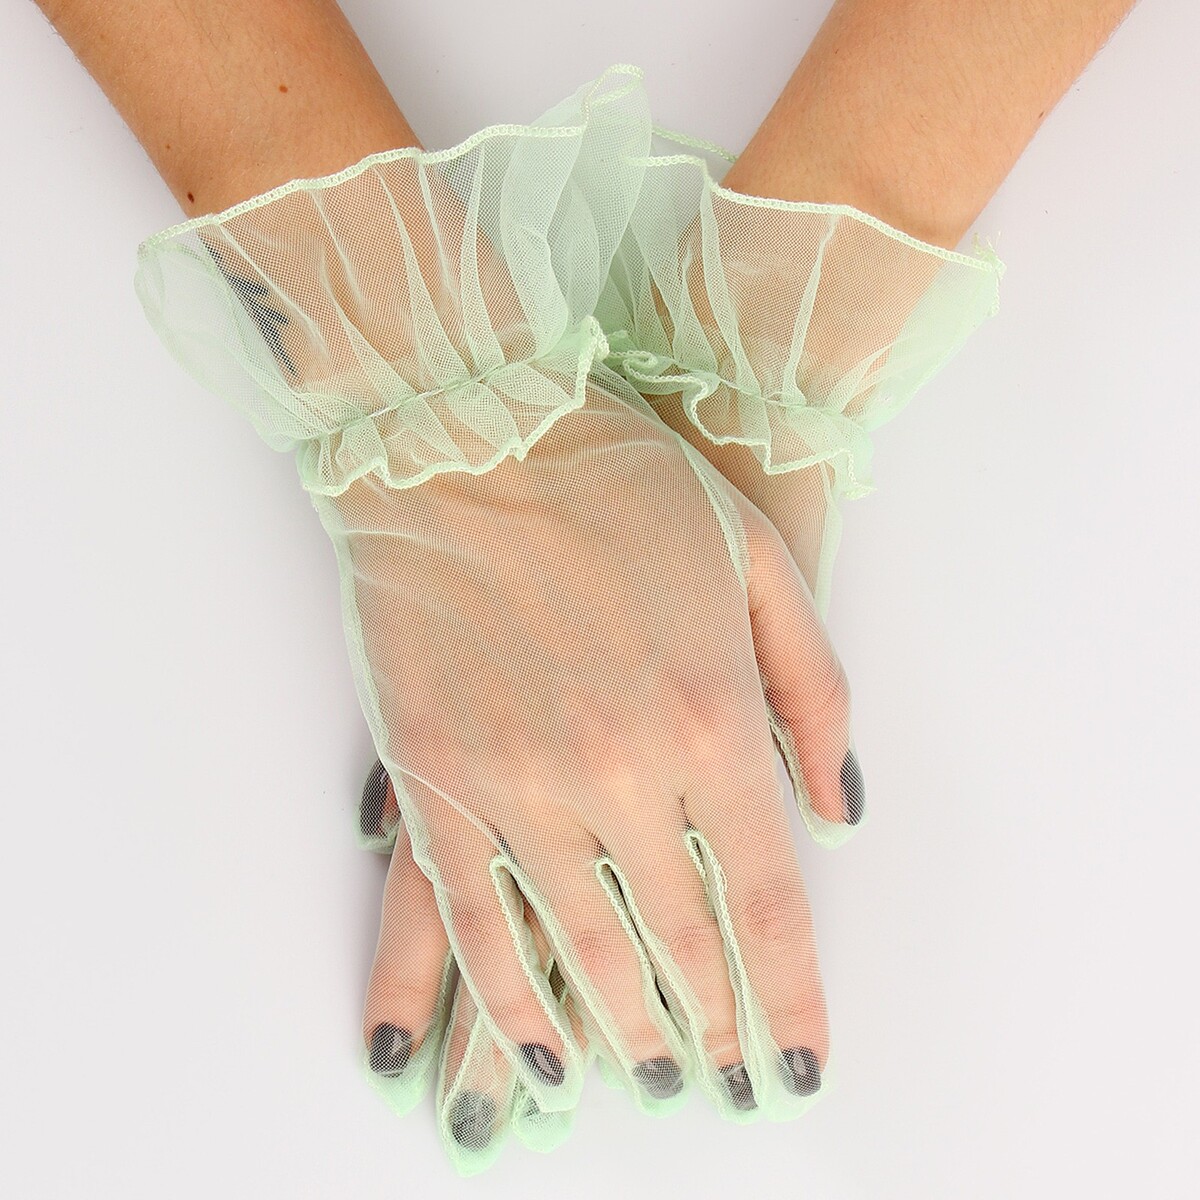 Карнавальный аксессуар - перчатки прозрачные с юбочкой, цвет зеленый карнавальнеый аксессуар перчатки прозрачные с длинной юбочкой